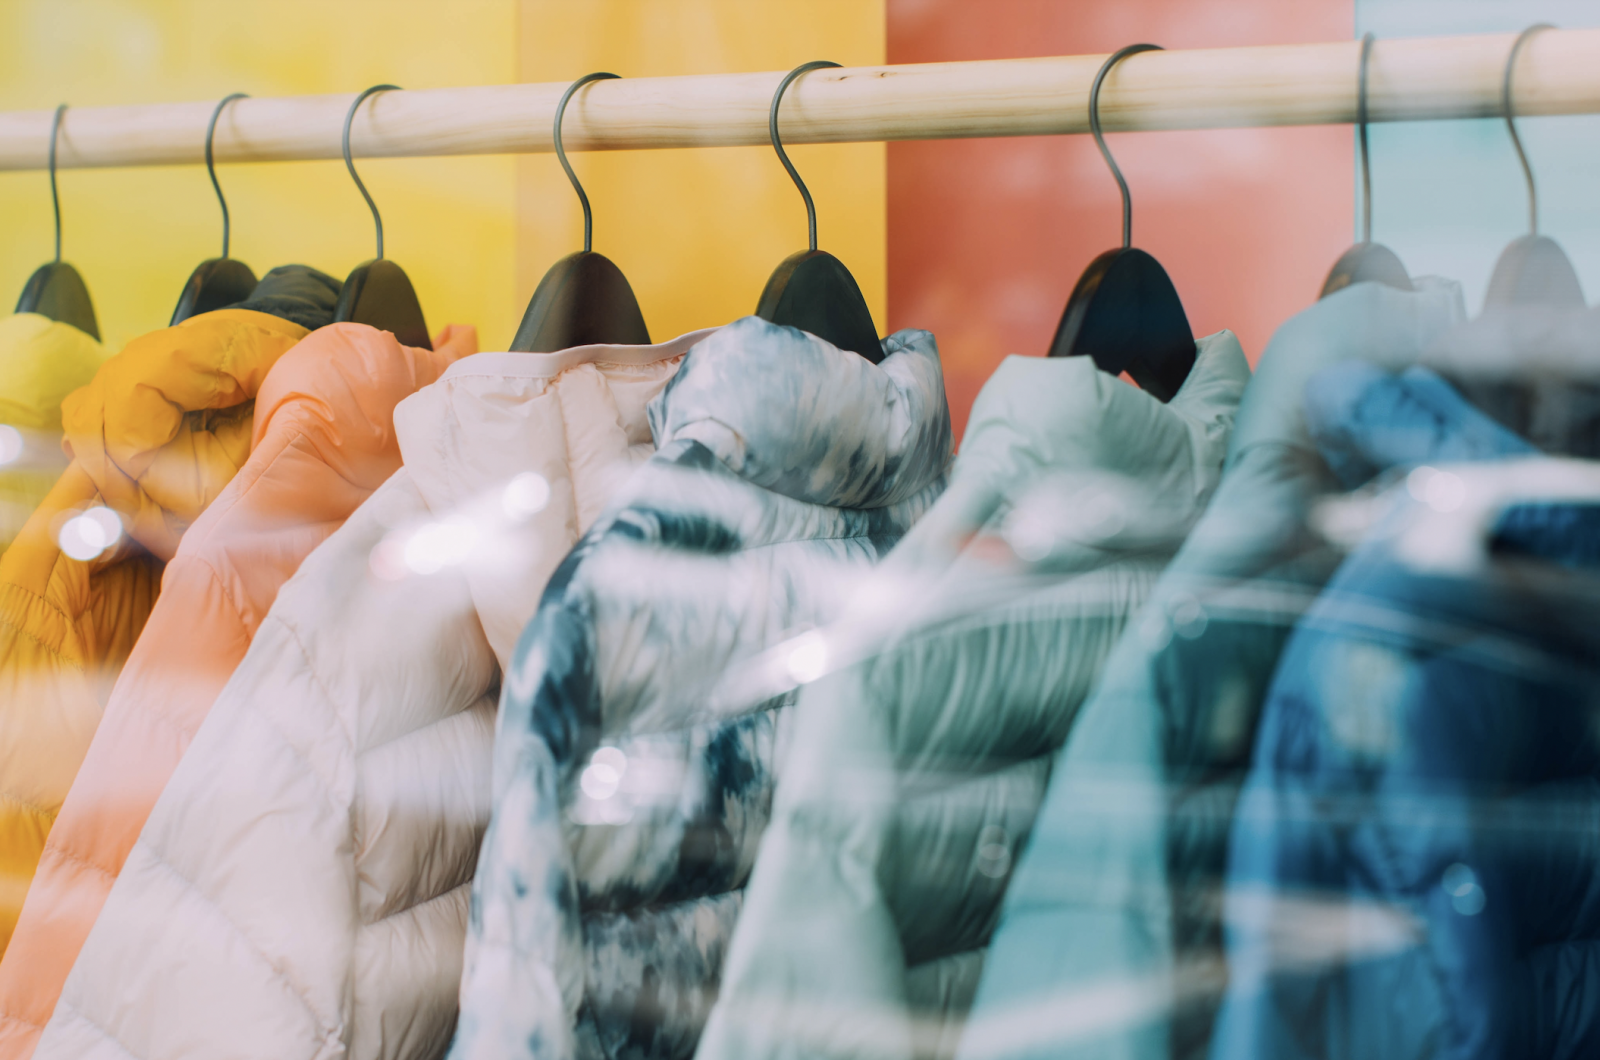 Winter jackets on hangers in a store window